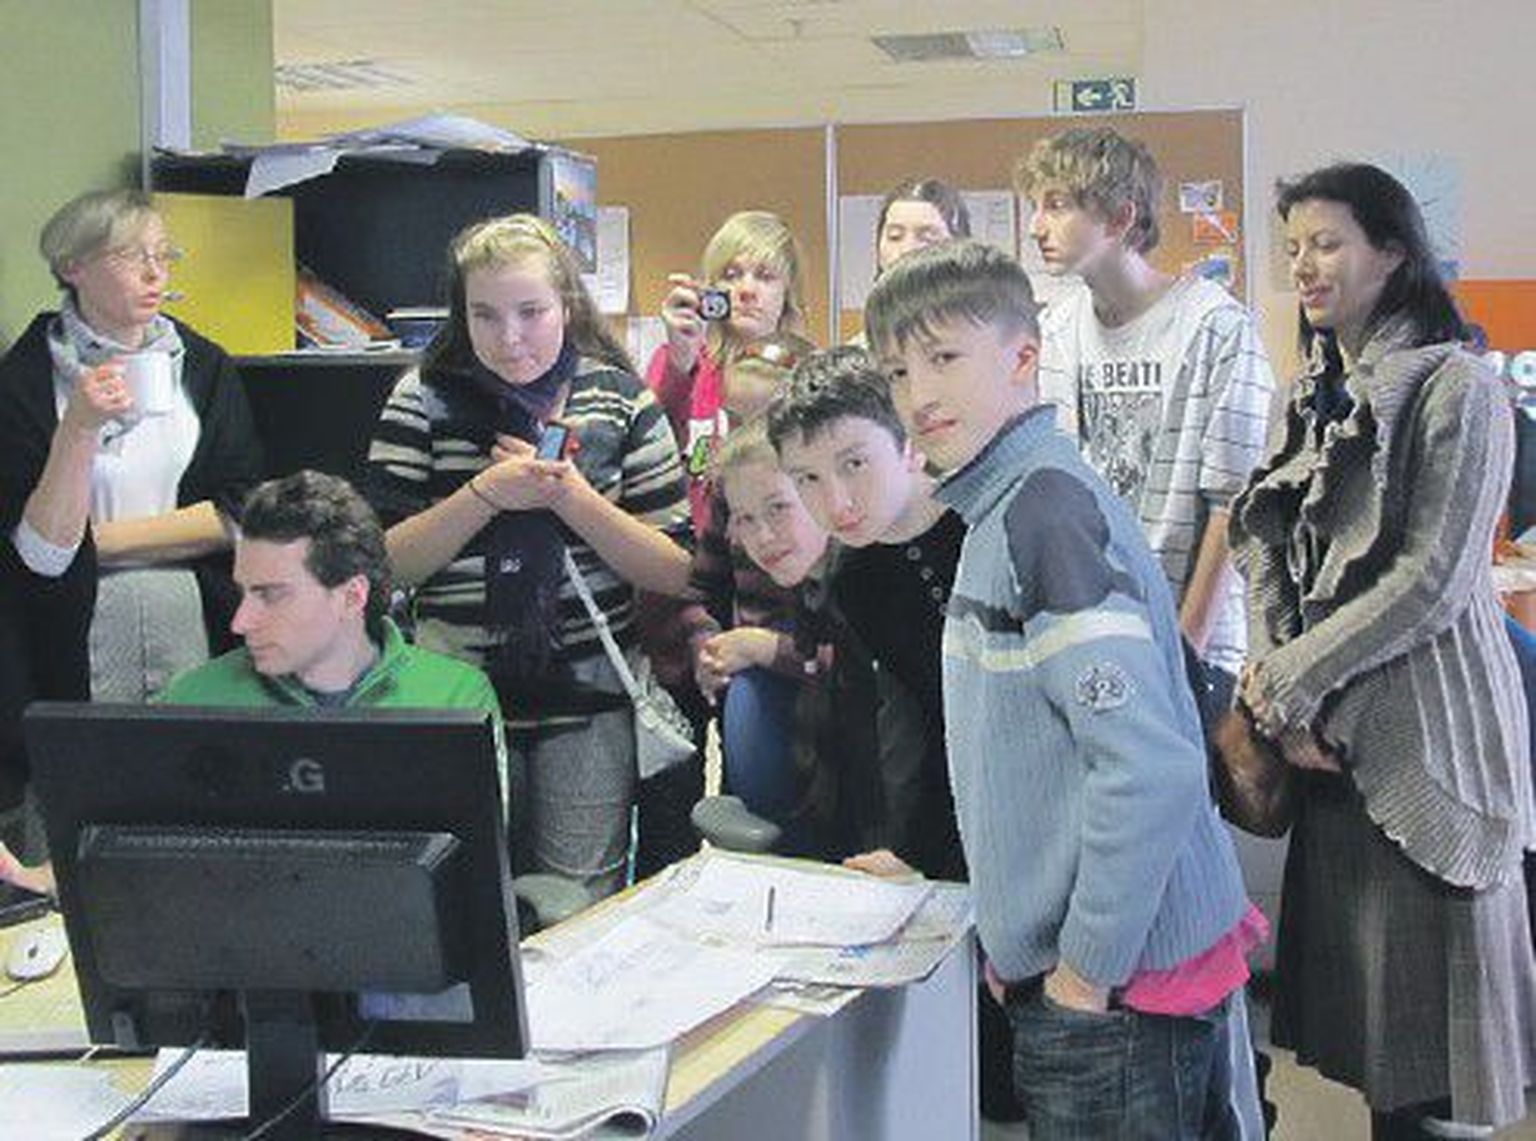 Дневной редактор Михаил Колосок показал ребятам из Русской гимназии Хааберсти, как делается газета.